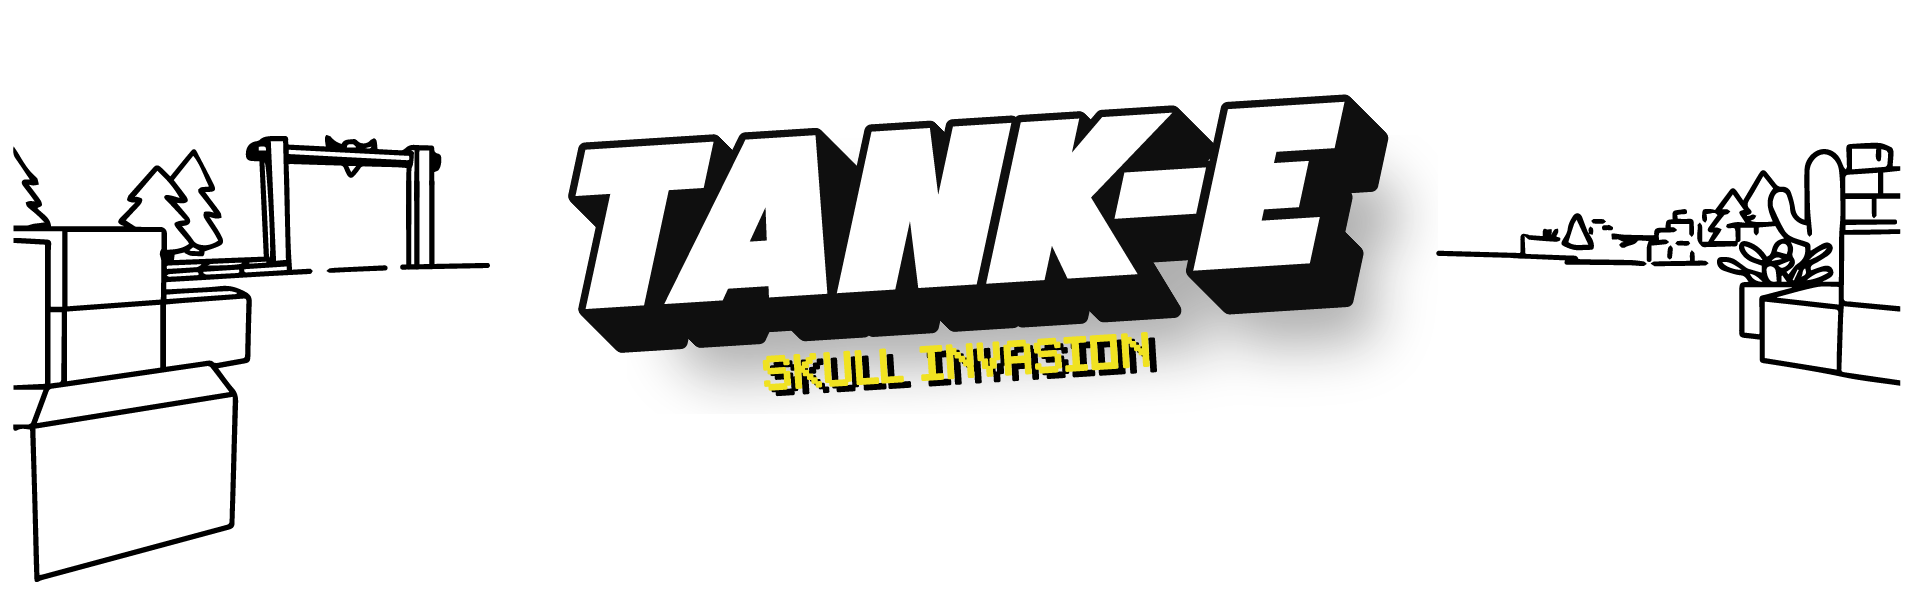 TANK-E Skull invasion